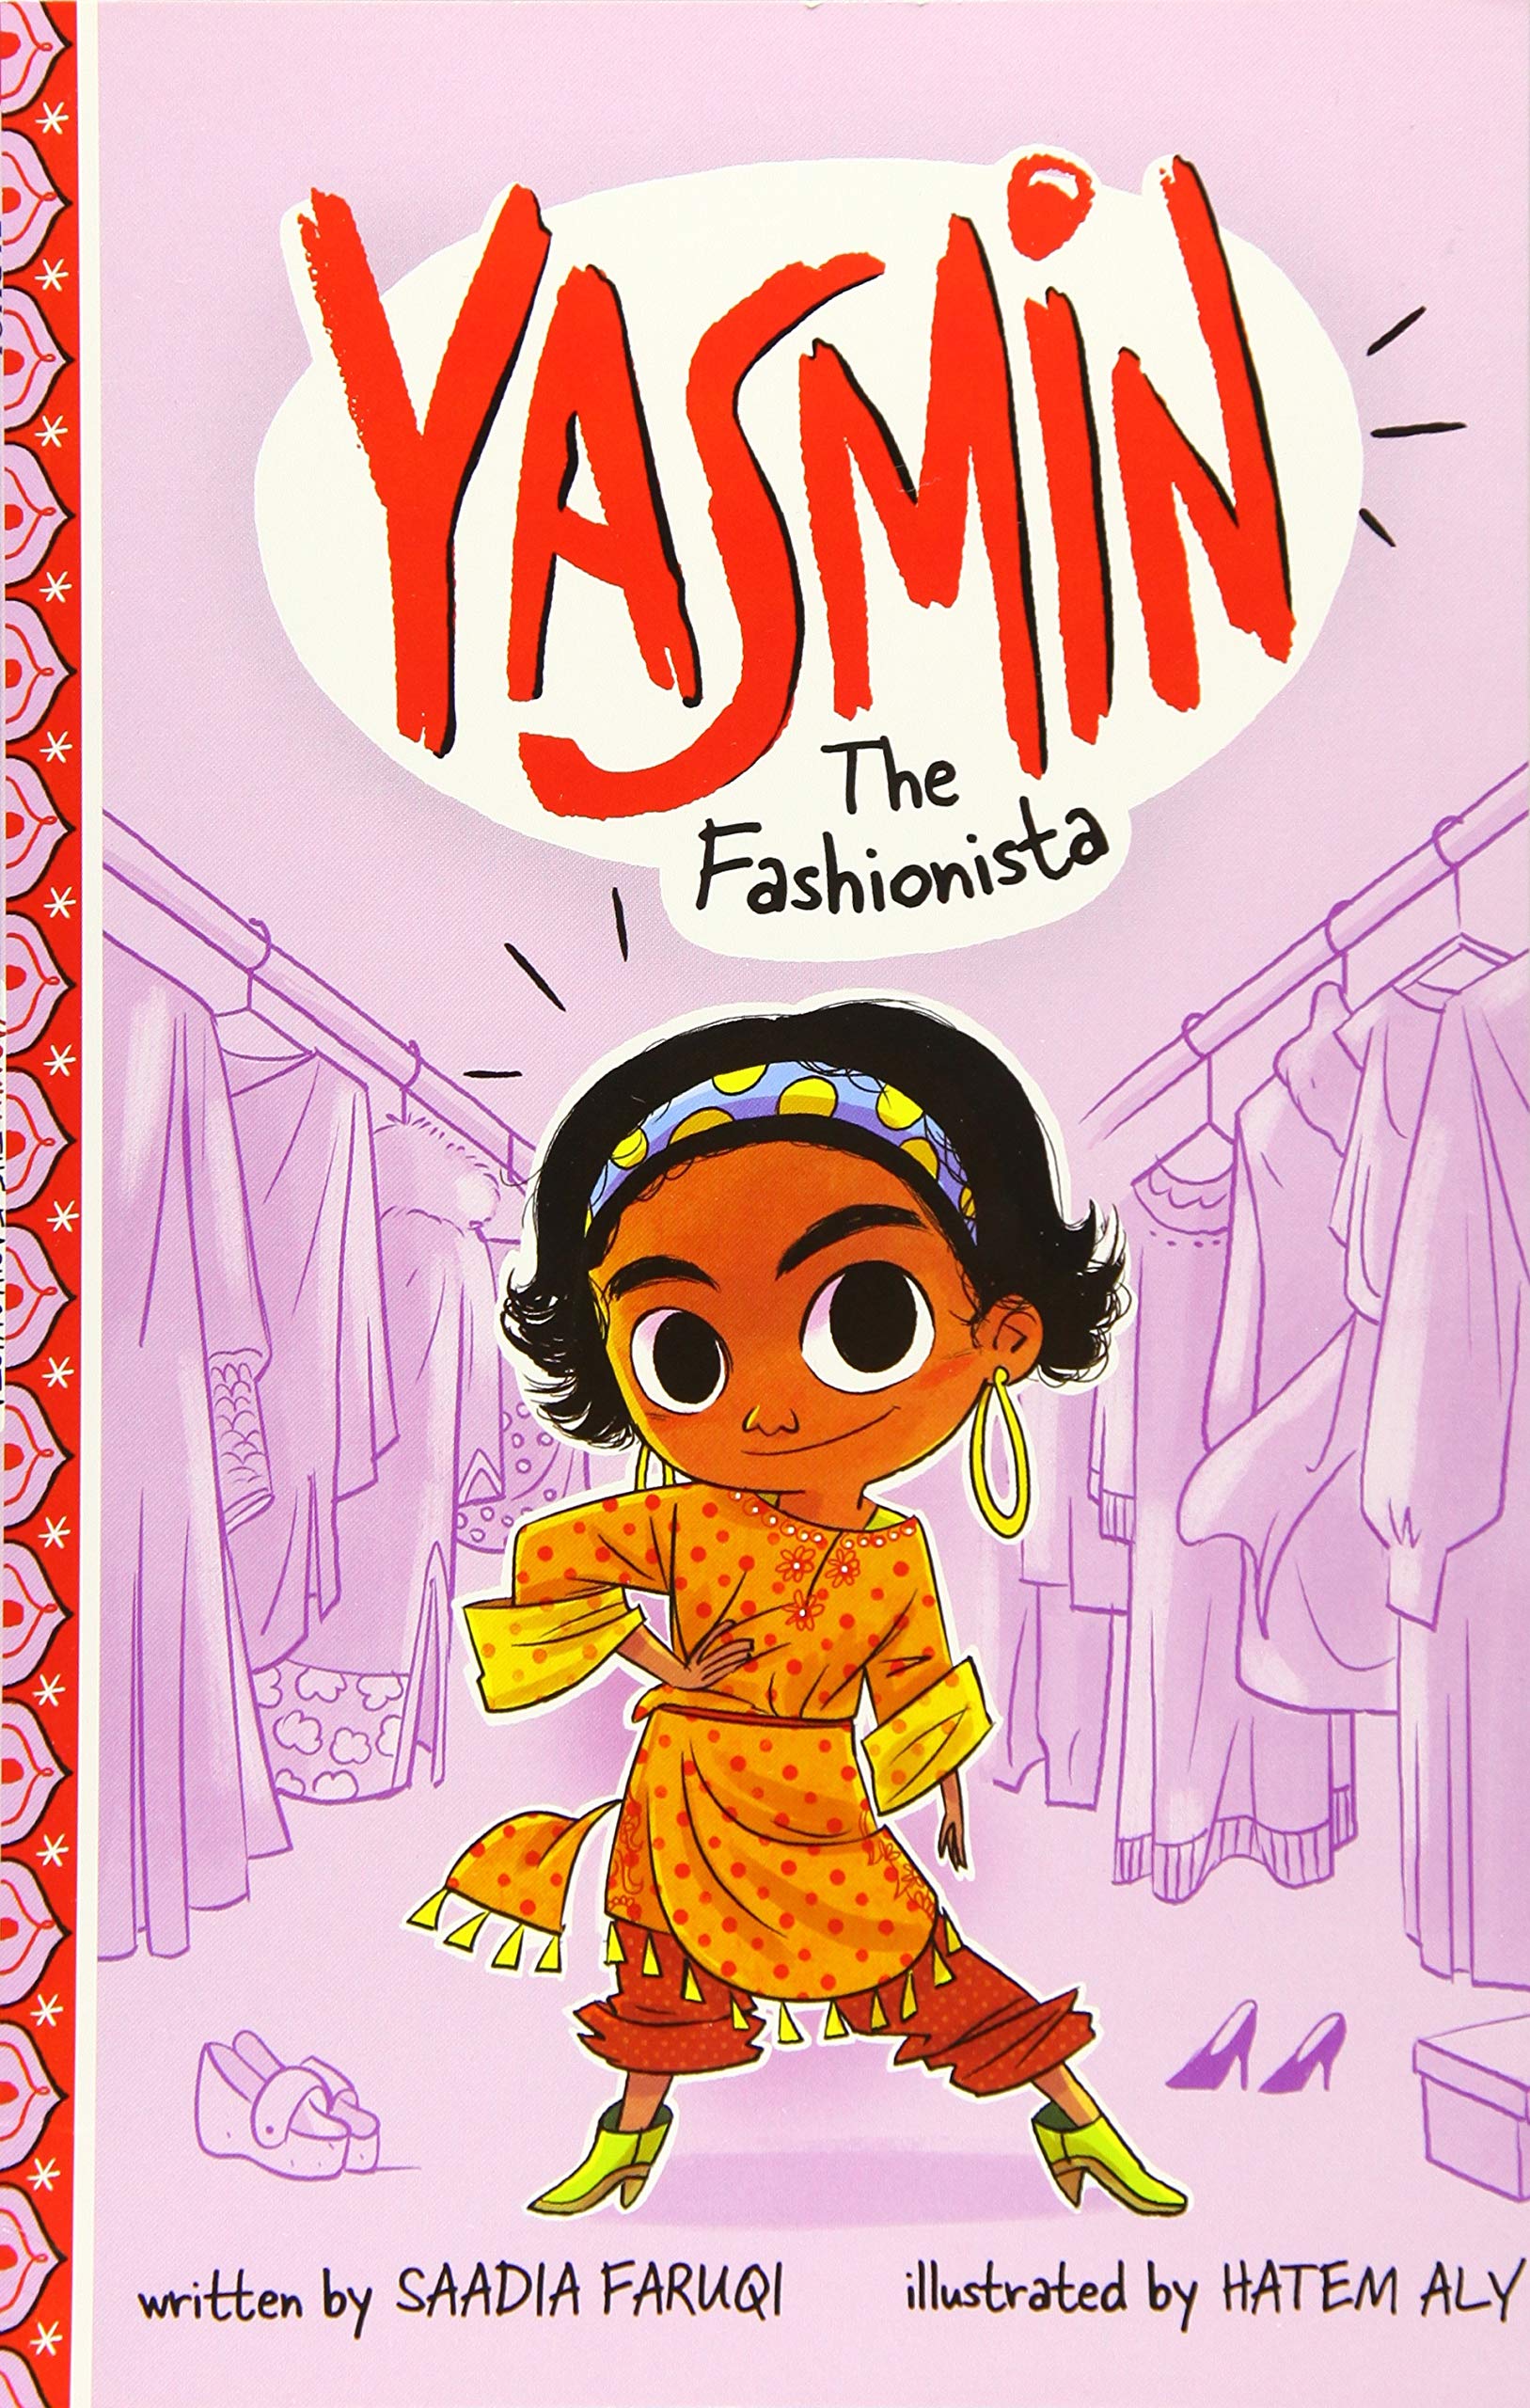 Yasmin The Fashionista